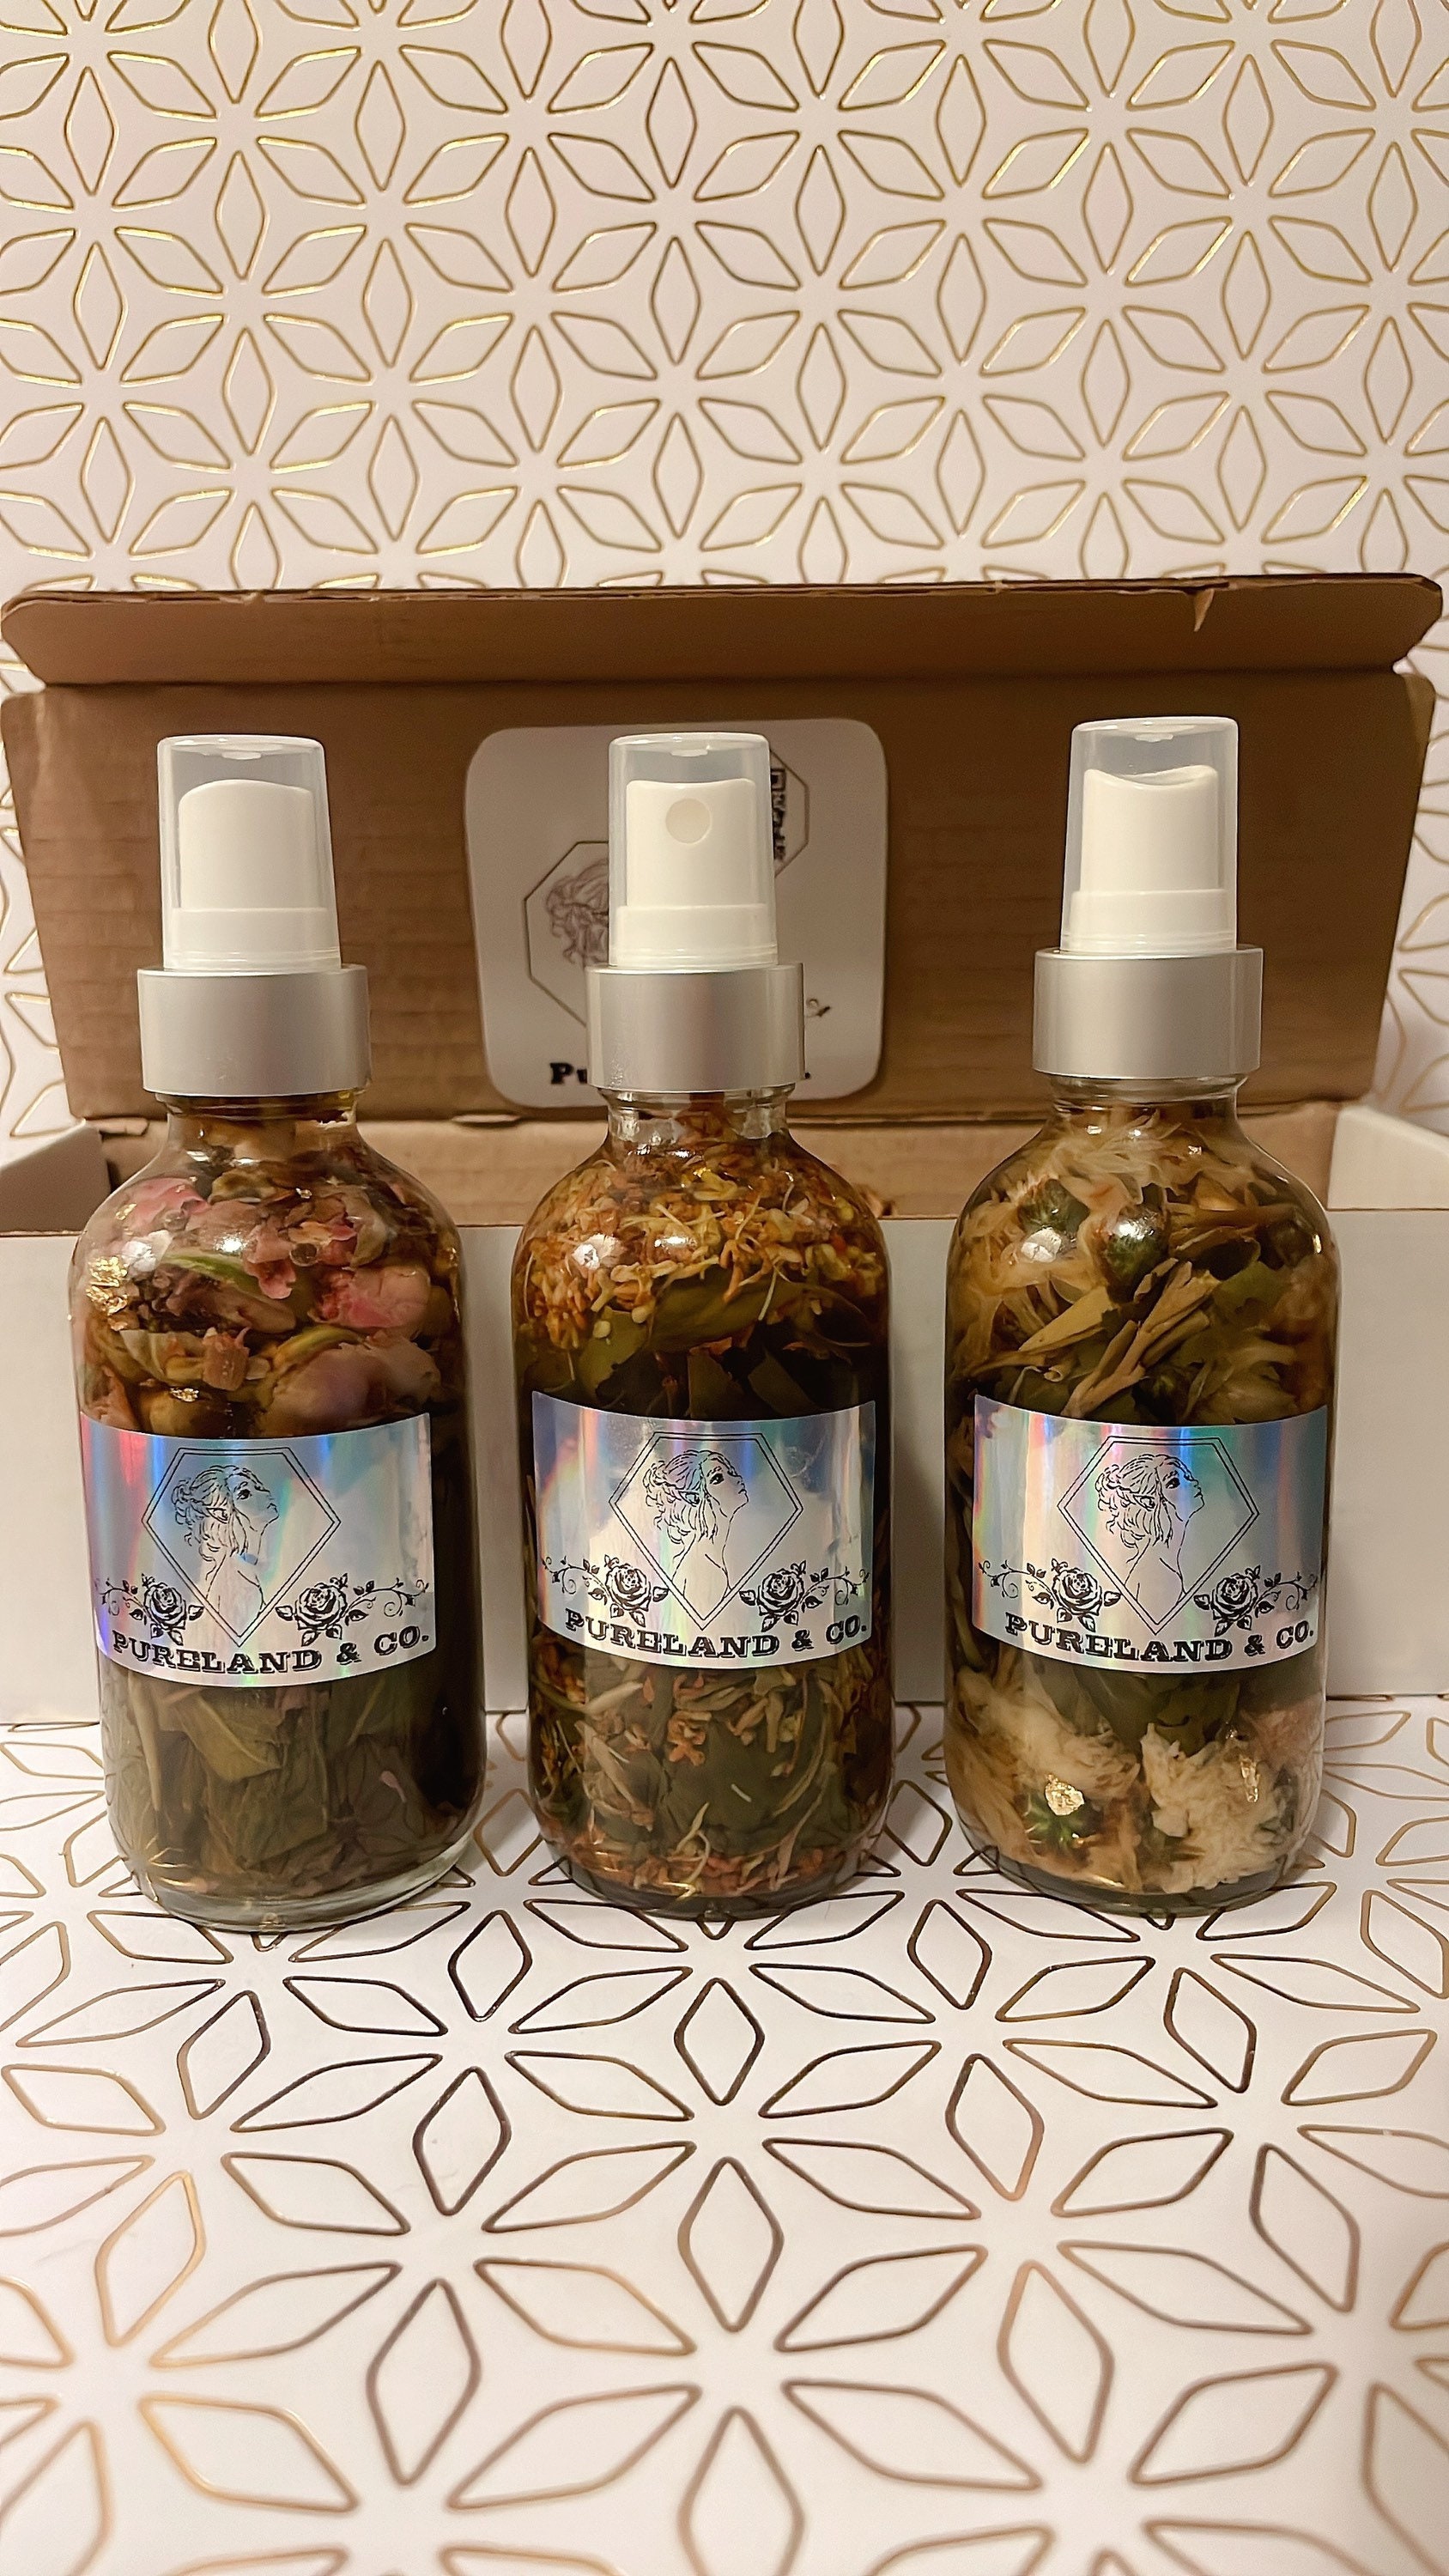 Poo-Pure Spray| Badezimmer Toilette Spray | Aromatherapie Schlafzimmer Küche Nebel Geschenkset 100 G Pro Flasche| 3 Flaschen in Einer Geschenkbox von Etsy - PurelandCo